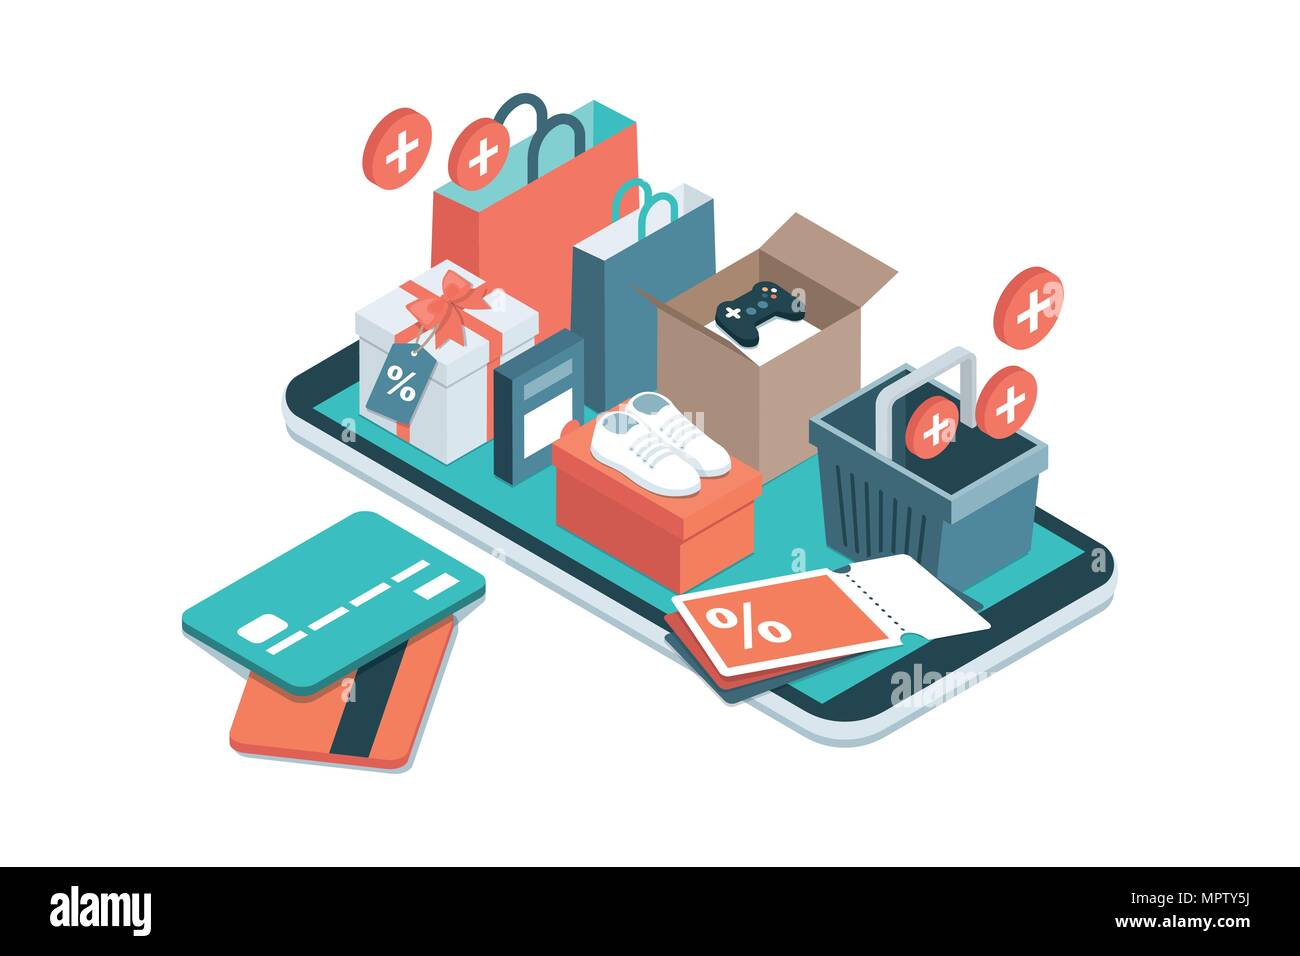 Application de shopping en ligne : cadeaux, shopping, cartes de crédit et de bons de réduction sur un smartphone Illustration de Vecteur